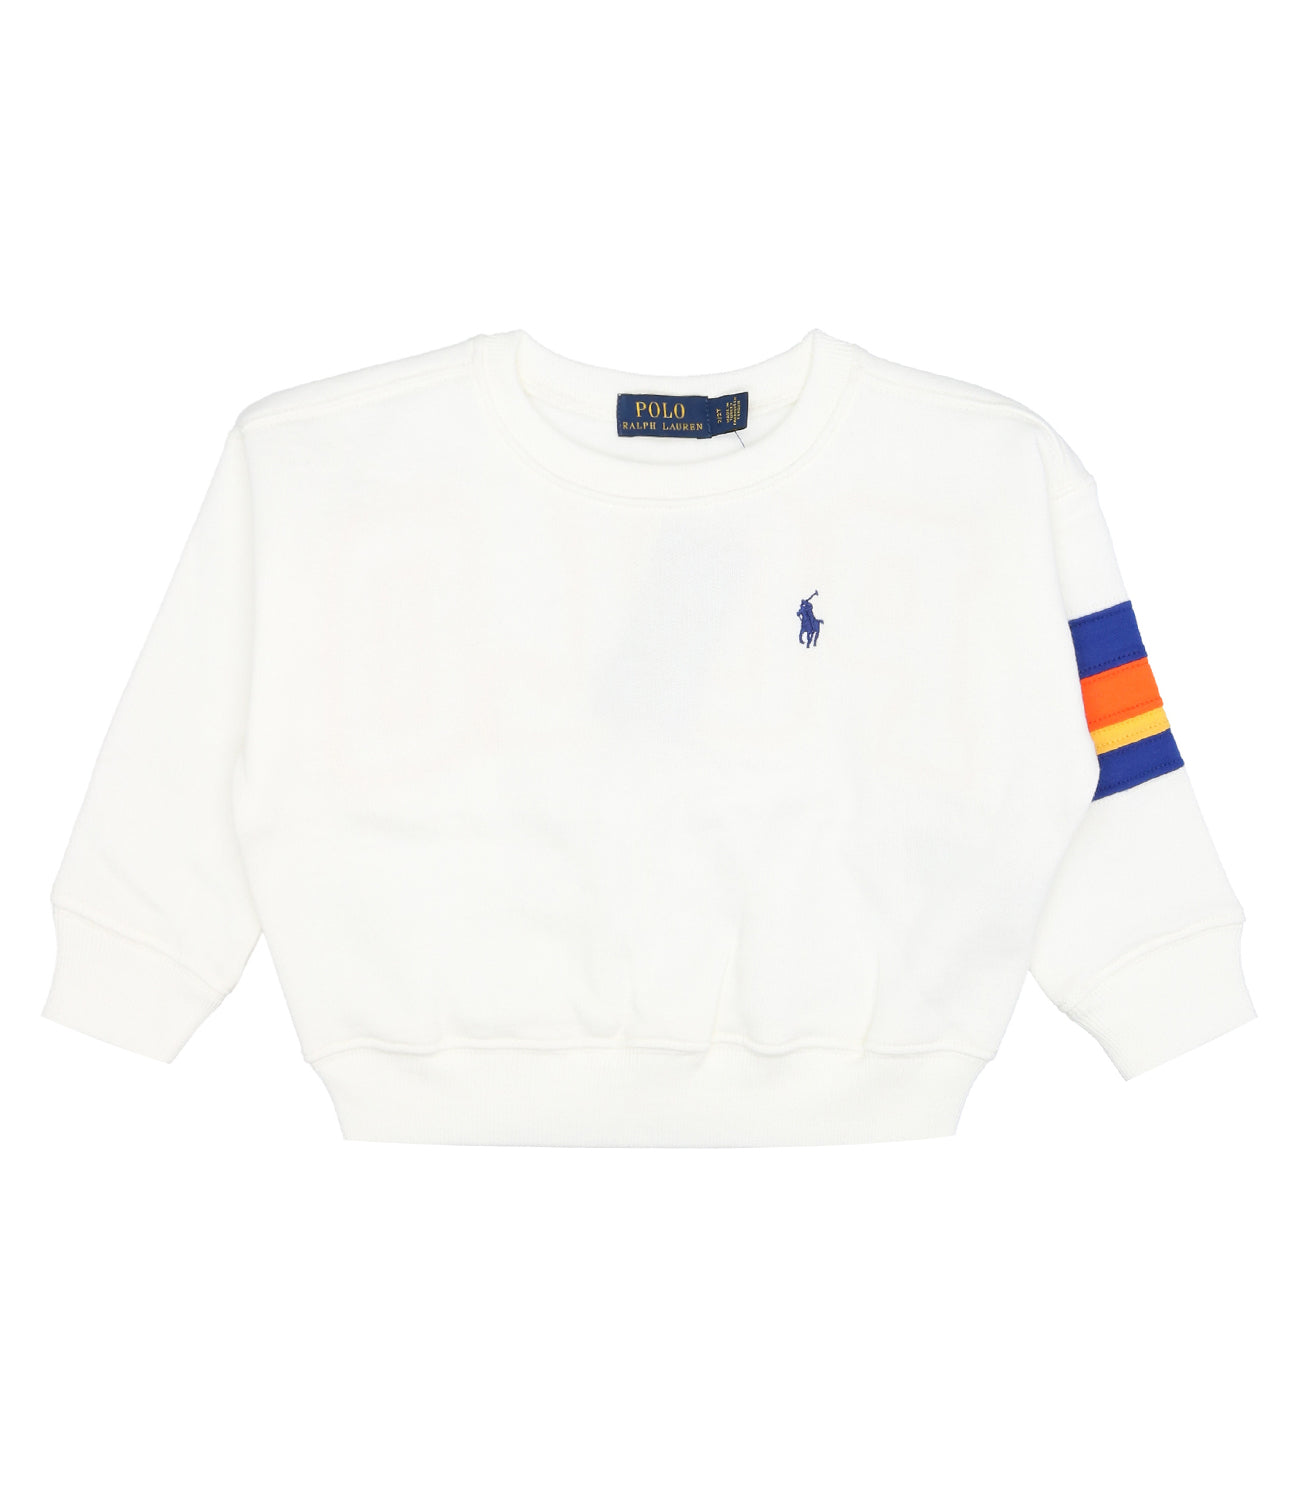 Ralph Lauren Childrenswear | Sweatshirt White